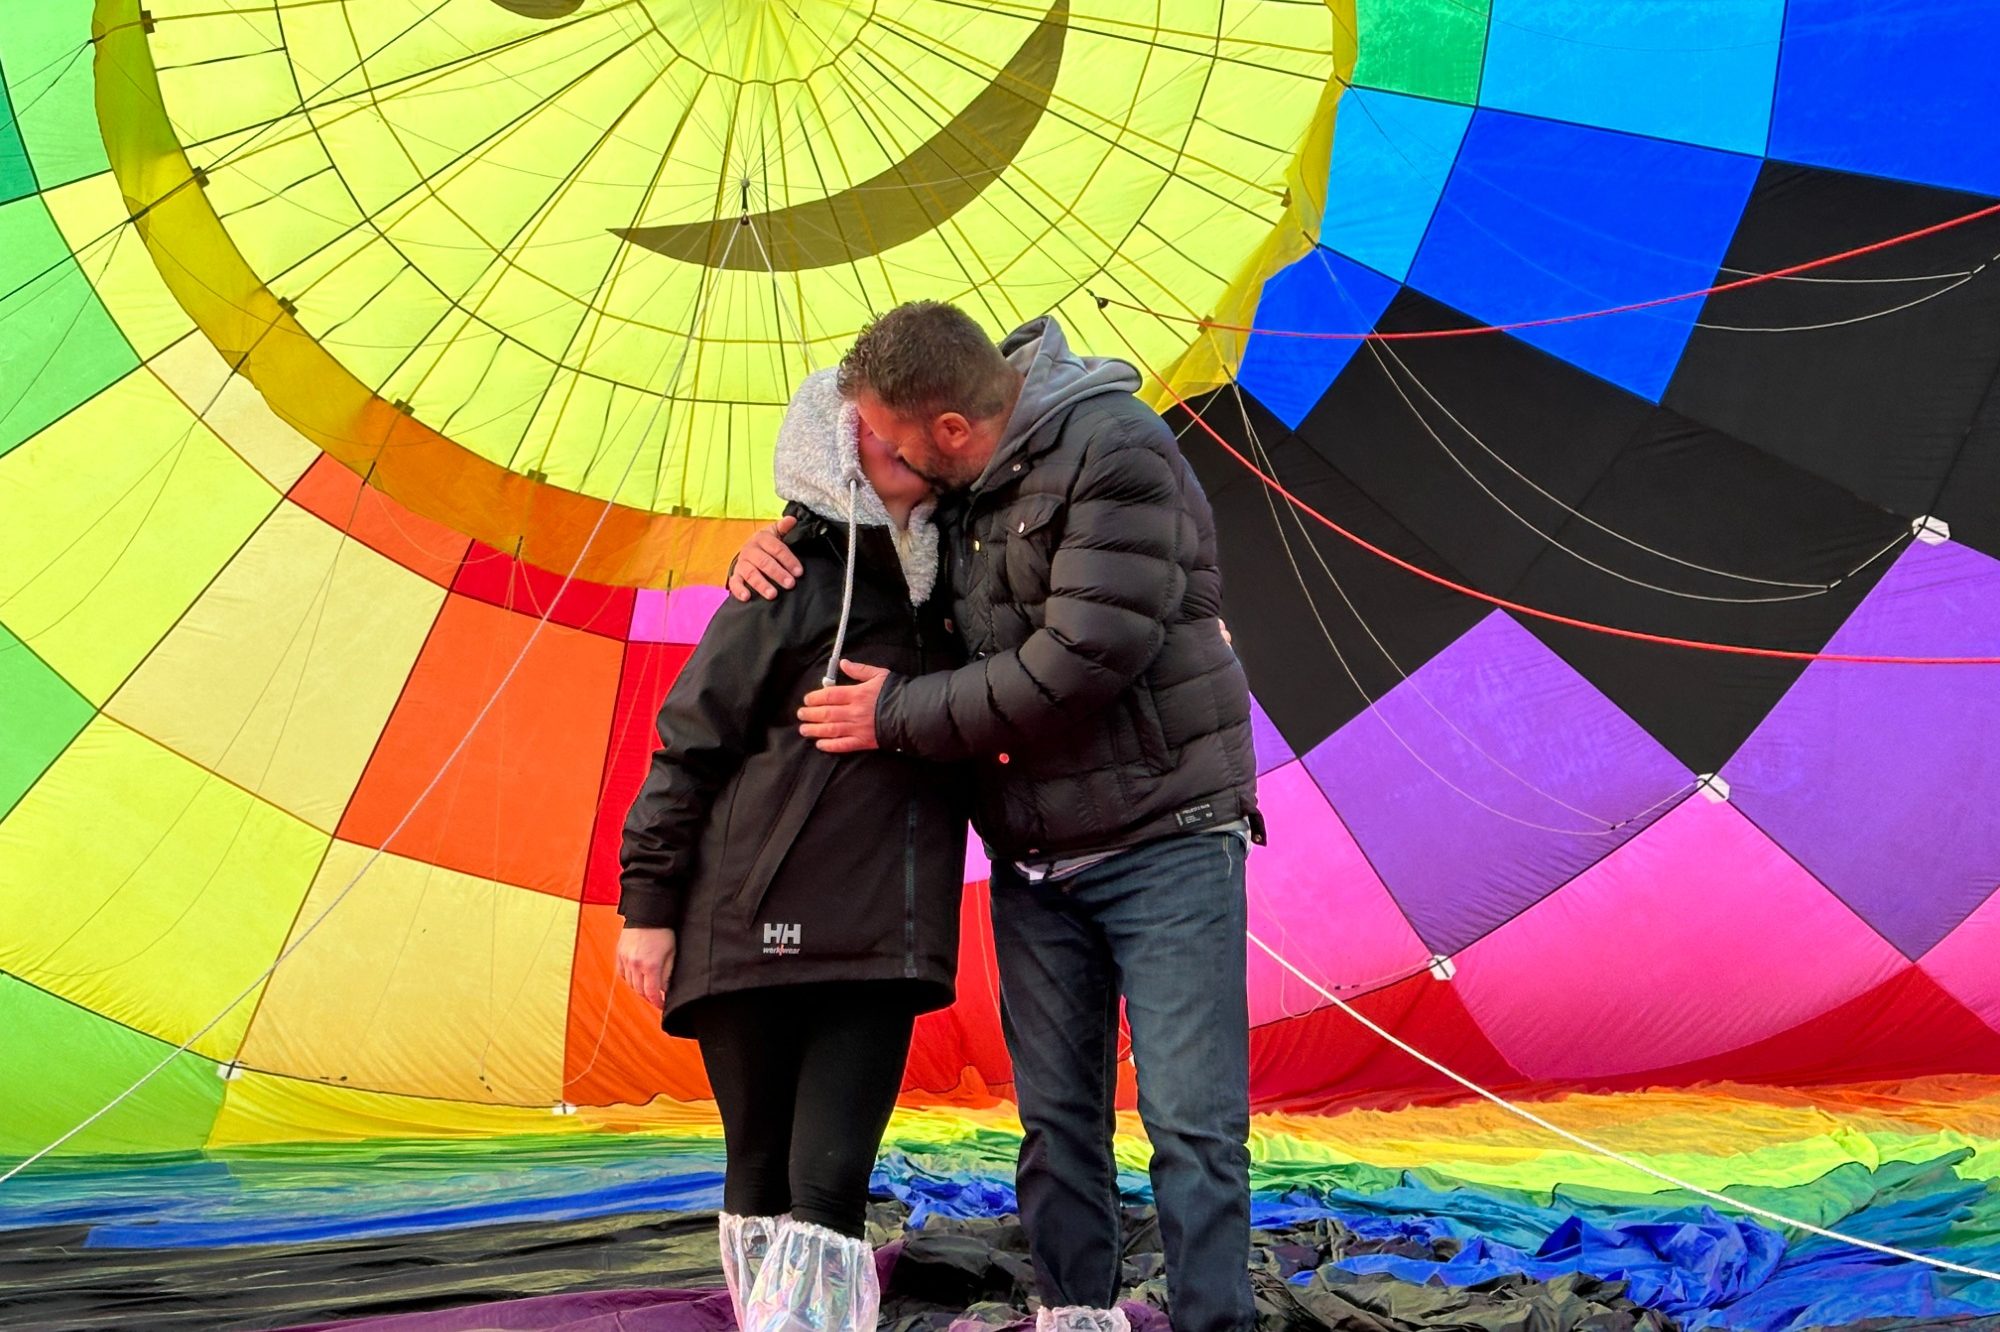 Vol montgolfière privatisé - Activité aérienne aérodrome Gap-Tallard - baptême en montgolfière partagé un moment hors du temps en toute convivialité dans notre petite nacelle en osier